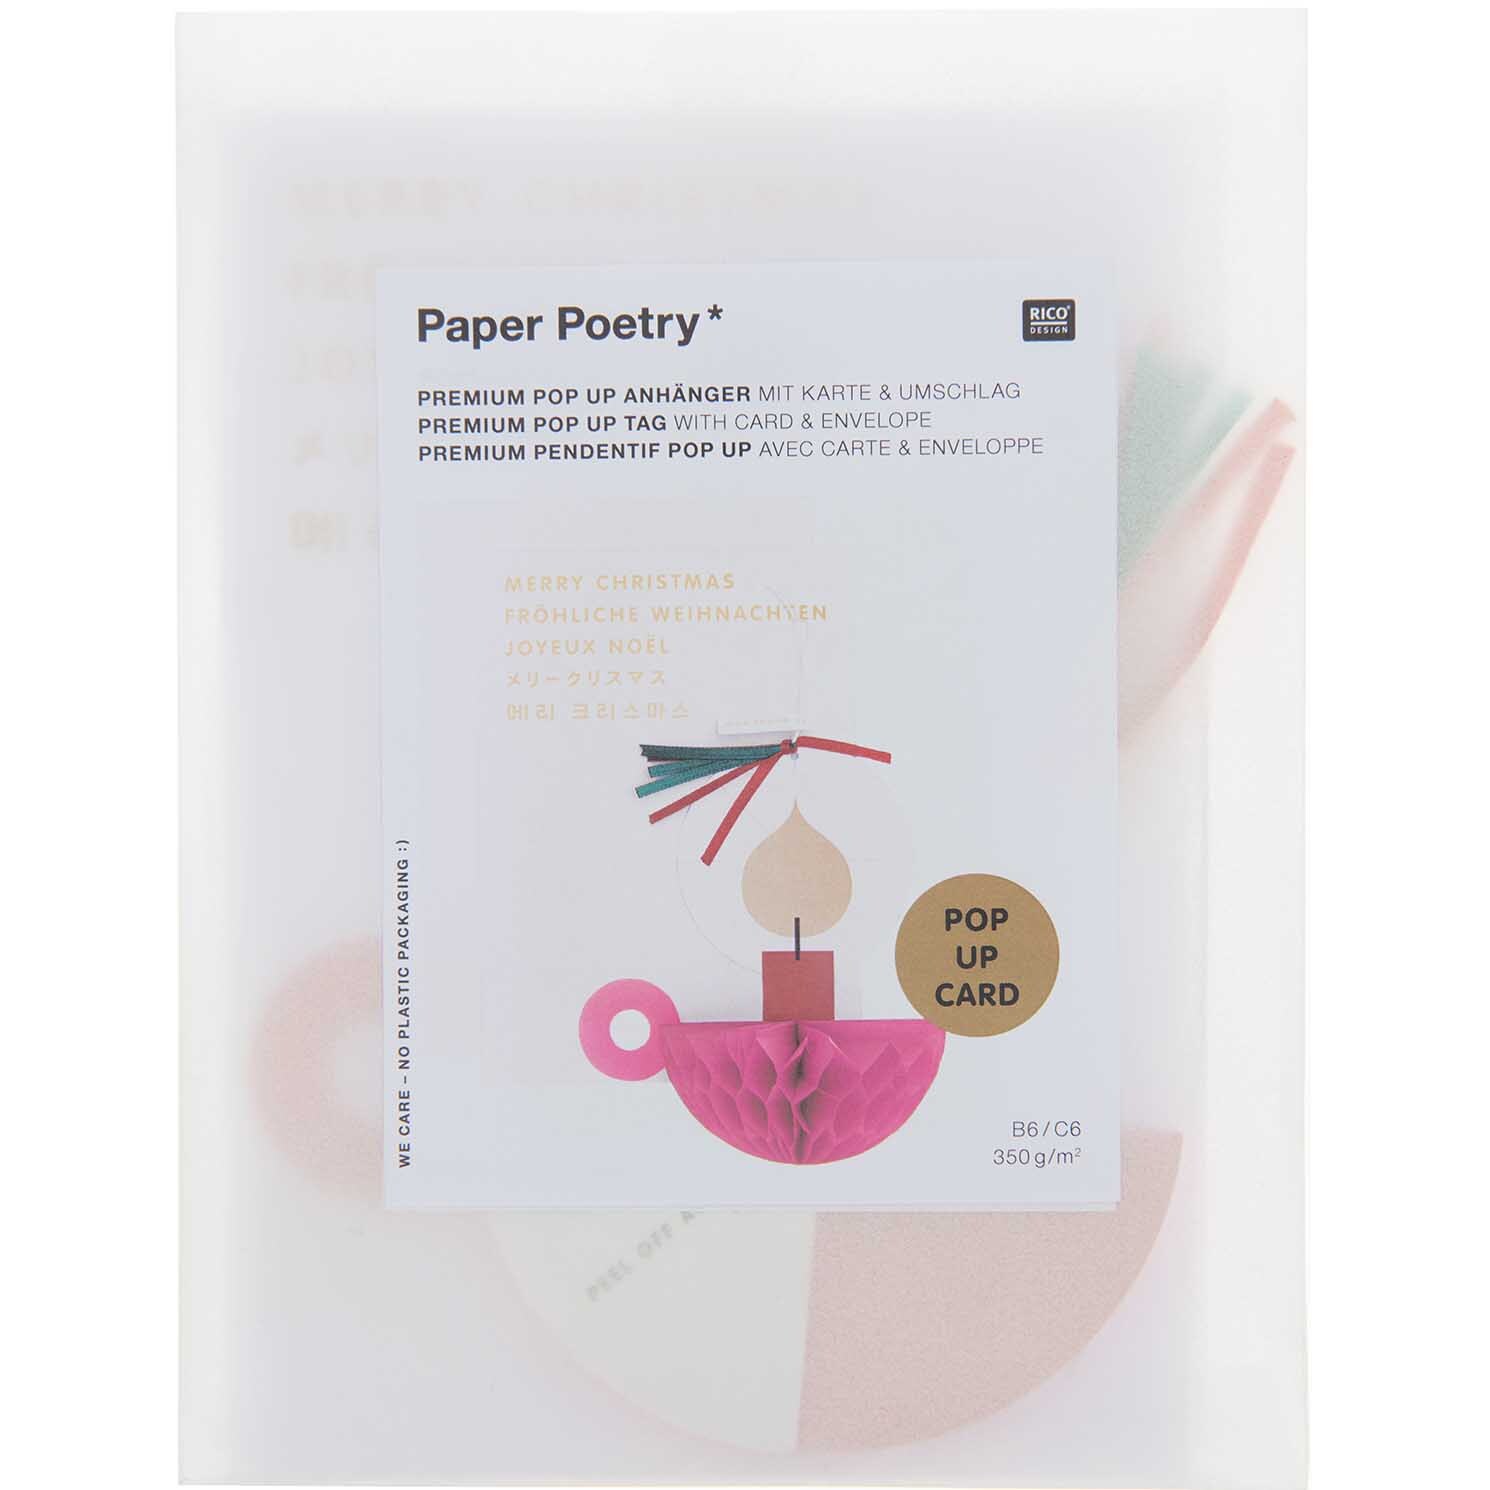 Paper Poetry Kartenset mit Pop-Up Anhänger Kerze B6